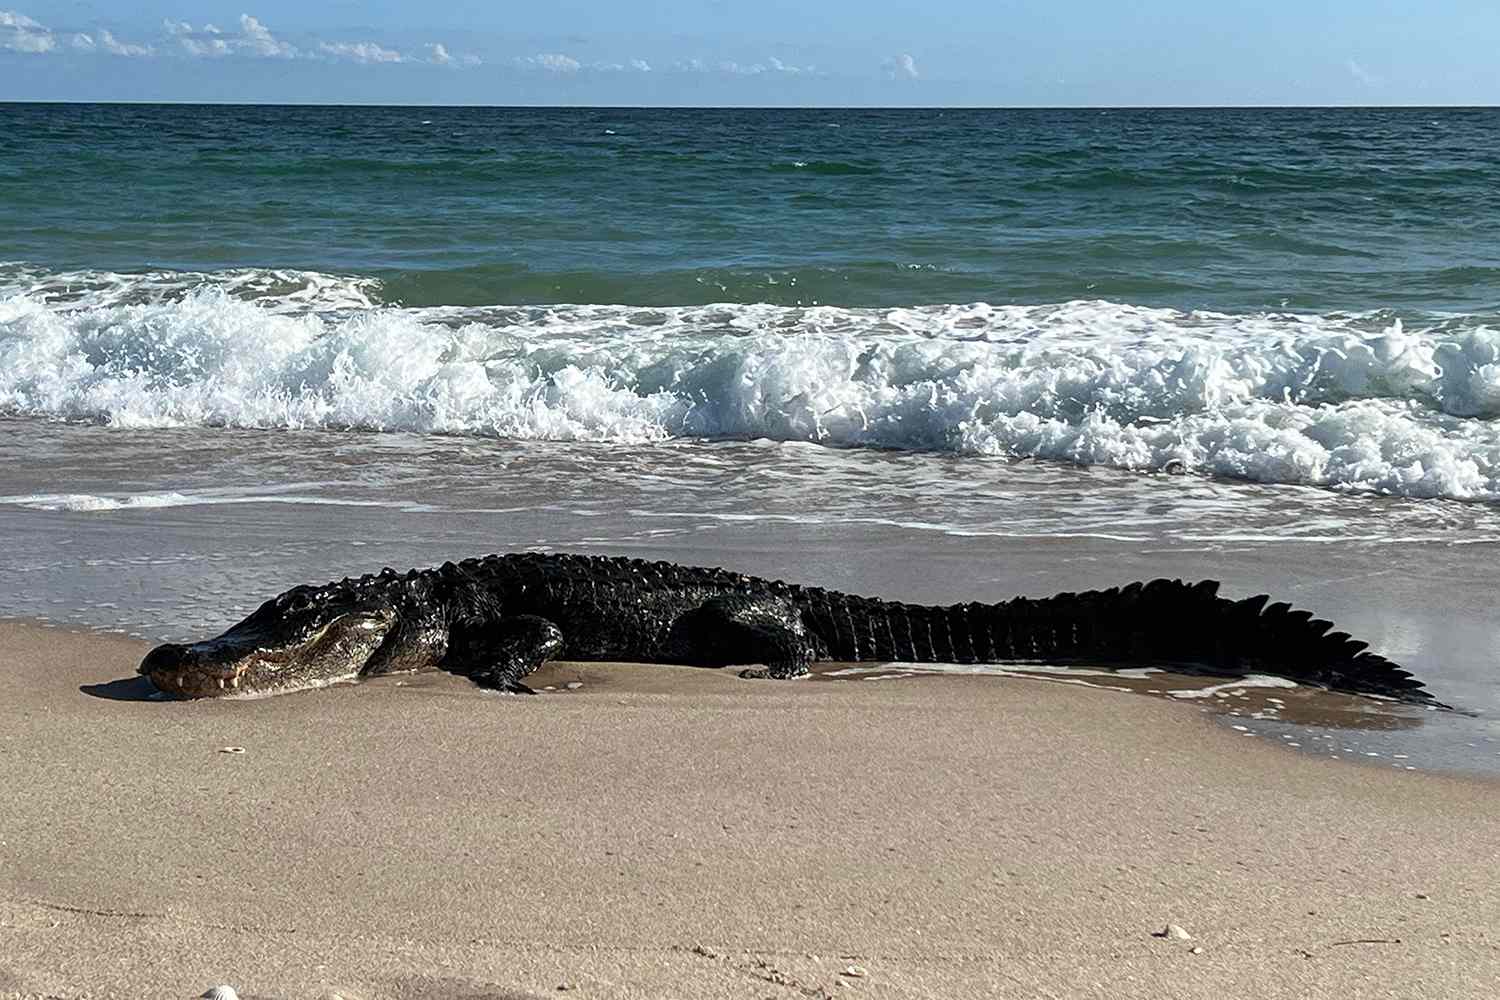 Are Alligators in the Ocean?